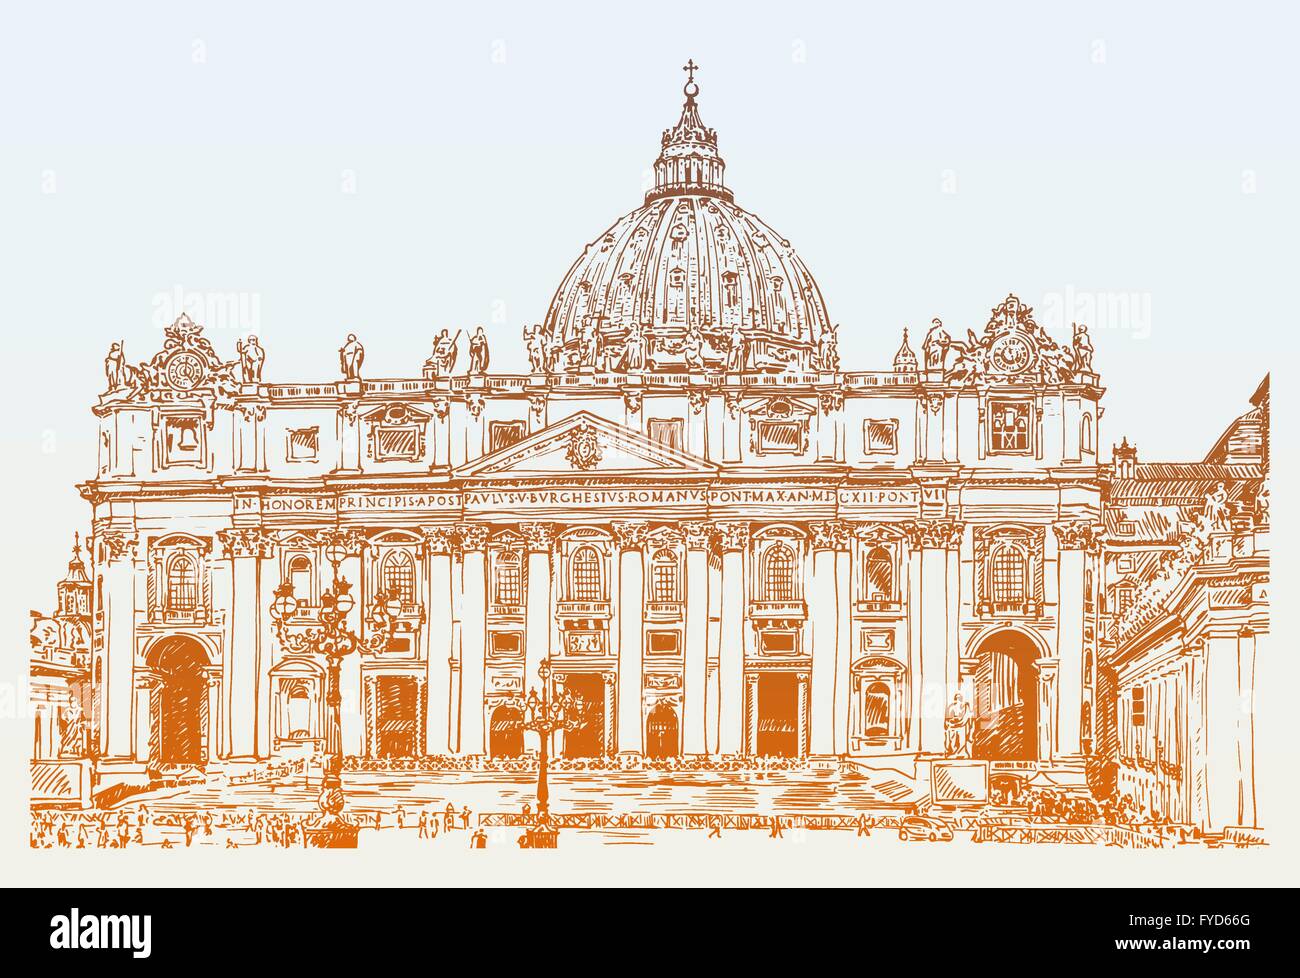 La Cathédrale de Saint-Pierre, Vatican, Rome, Italie. Dessin à la main Illustration de Vecteur